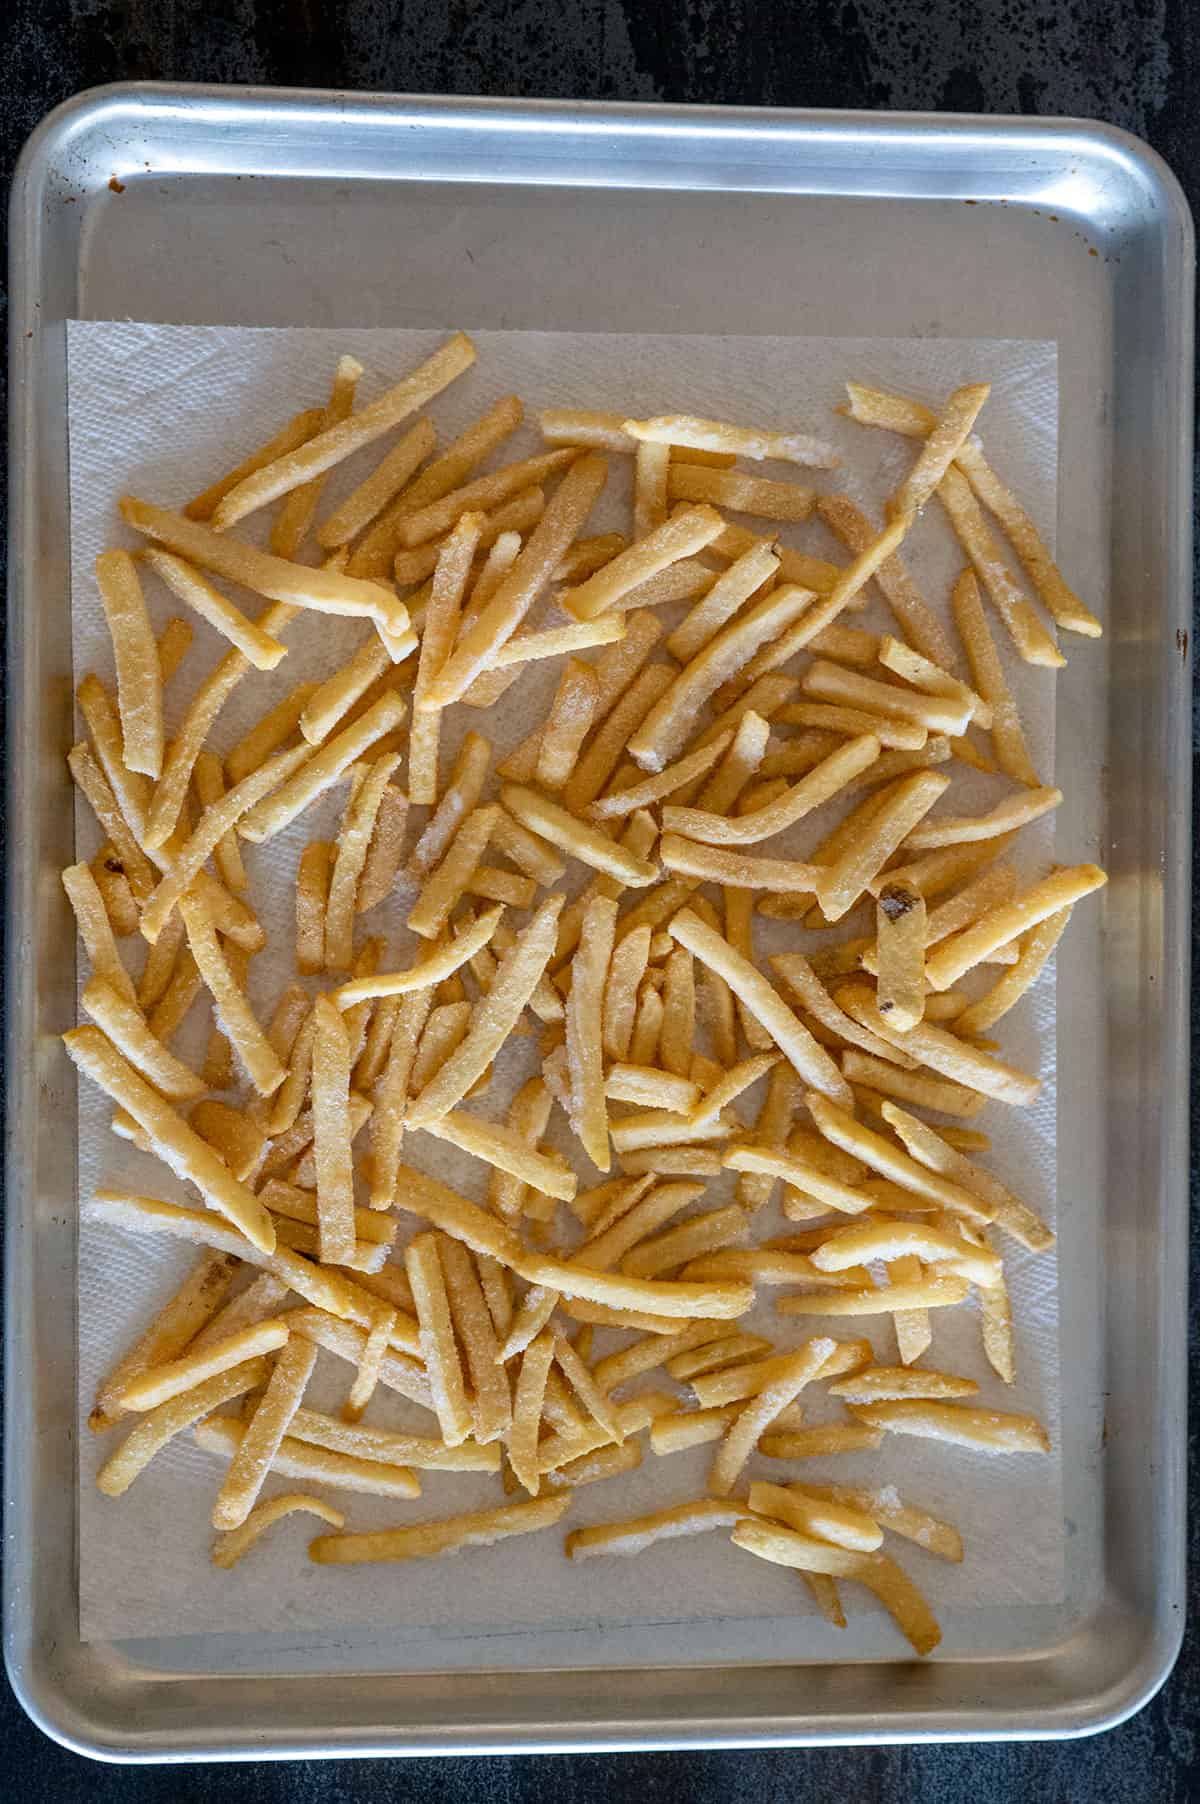 frozen fries thawing on sheet pan.